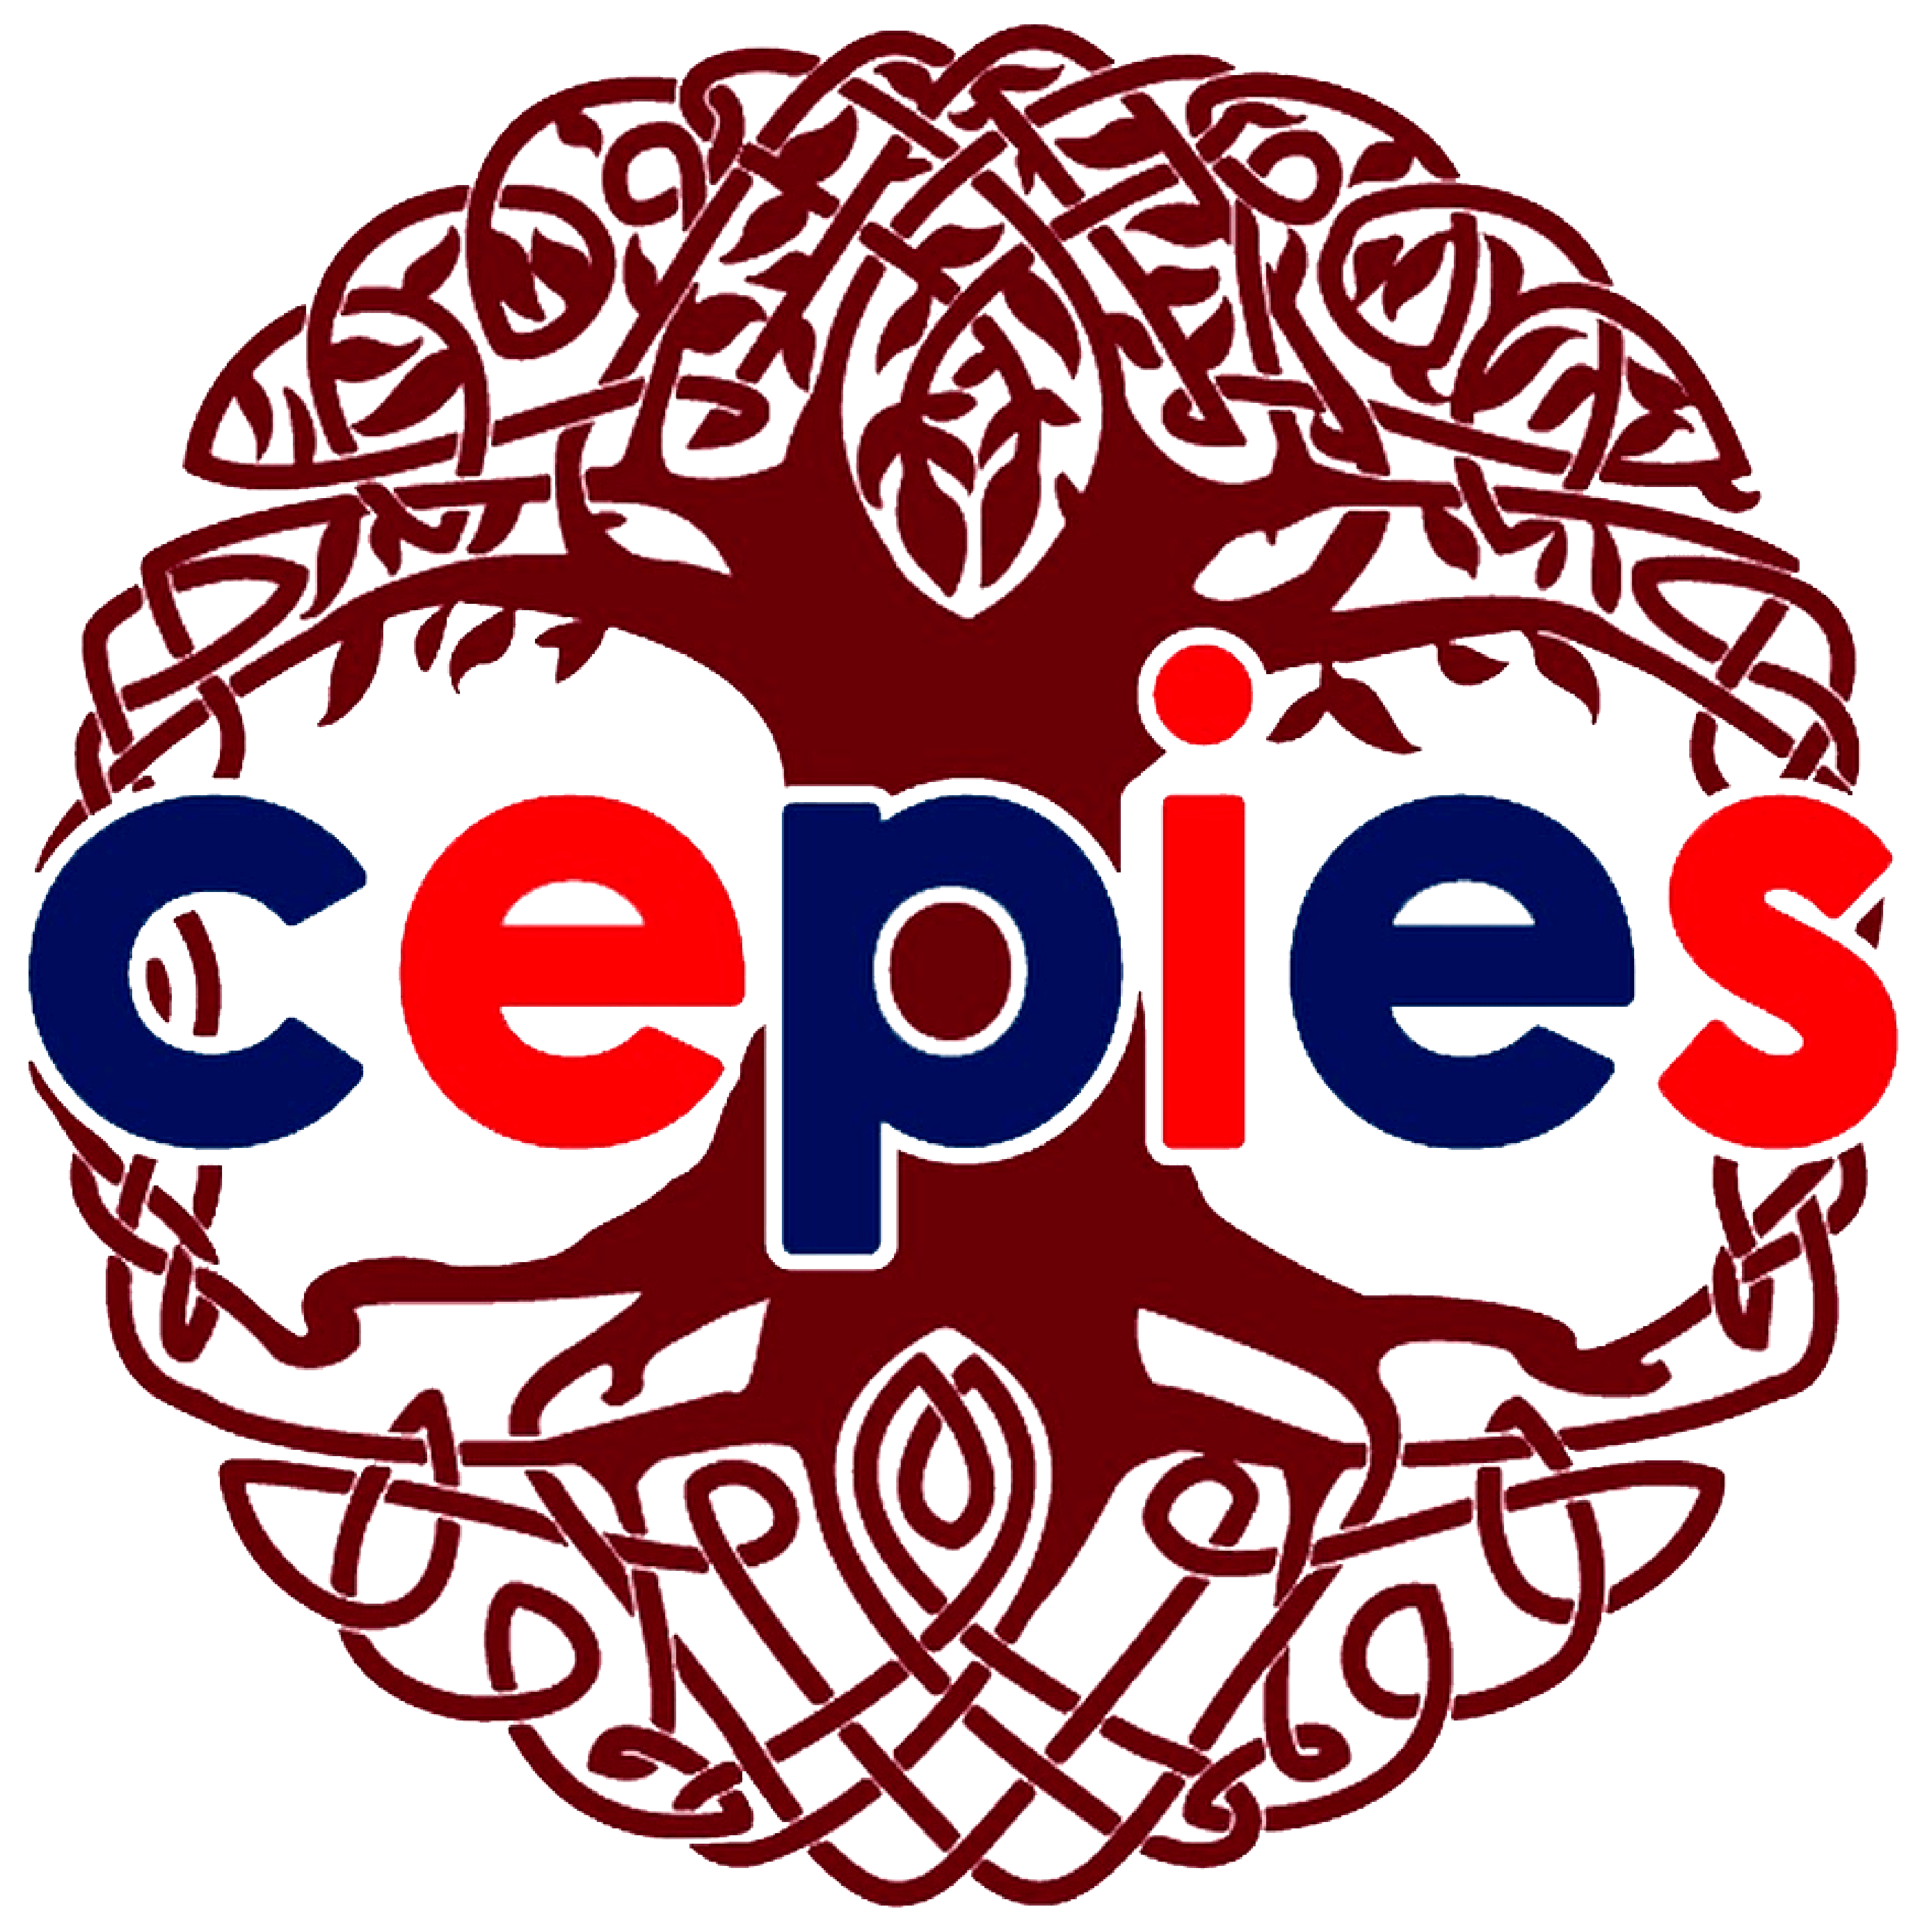 Cepies